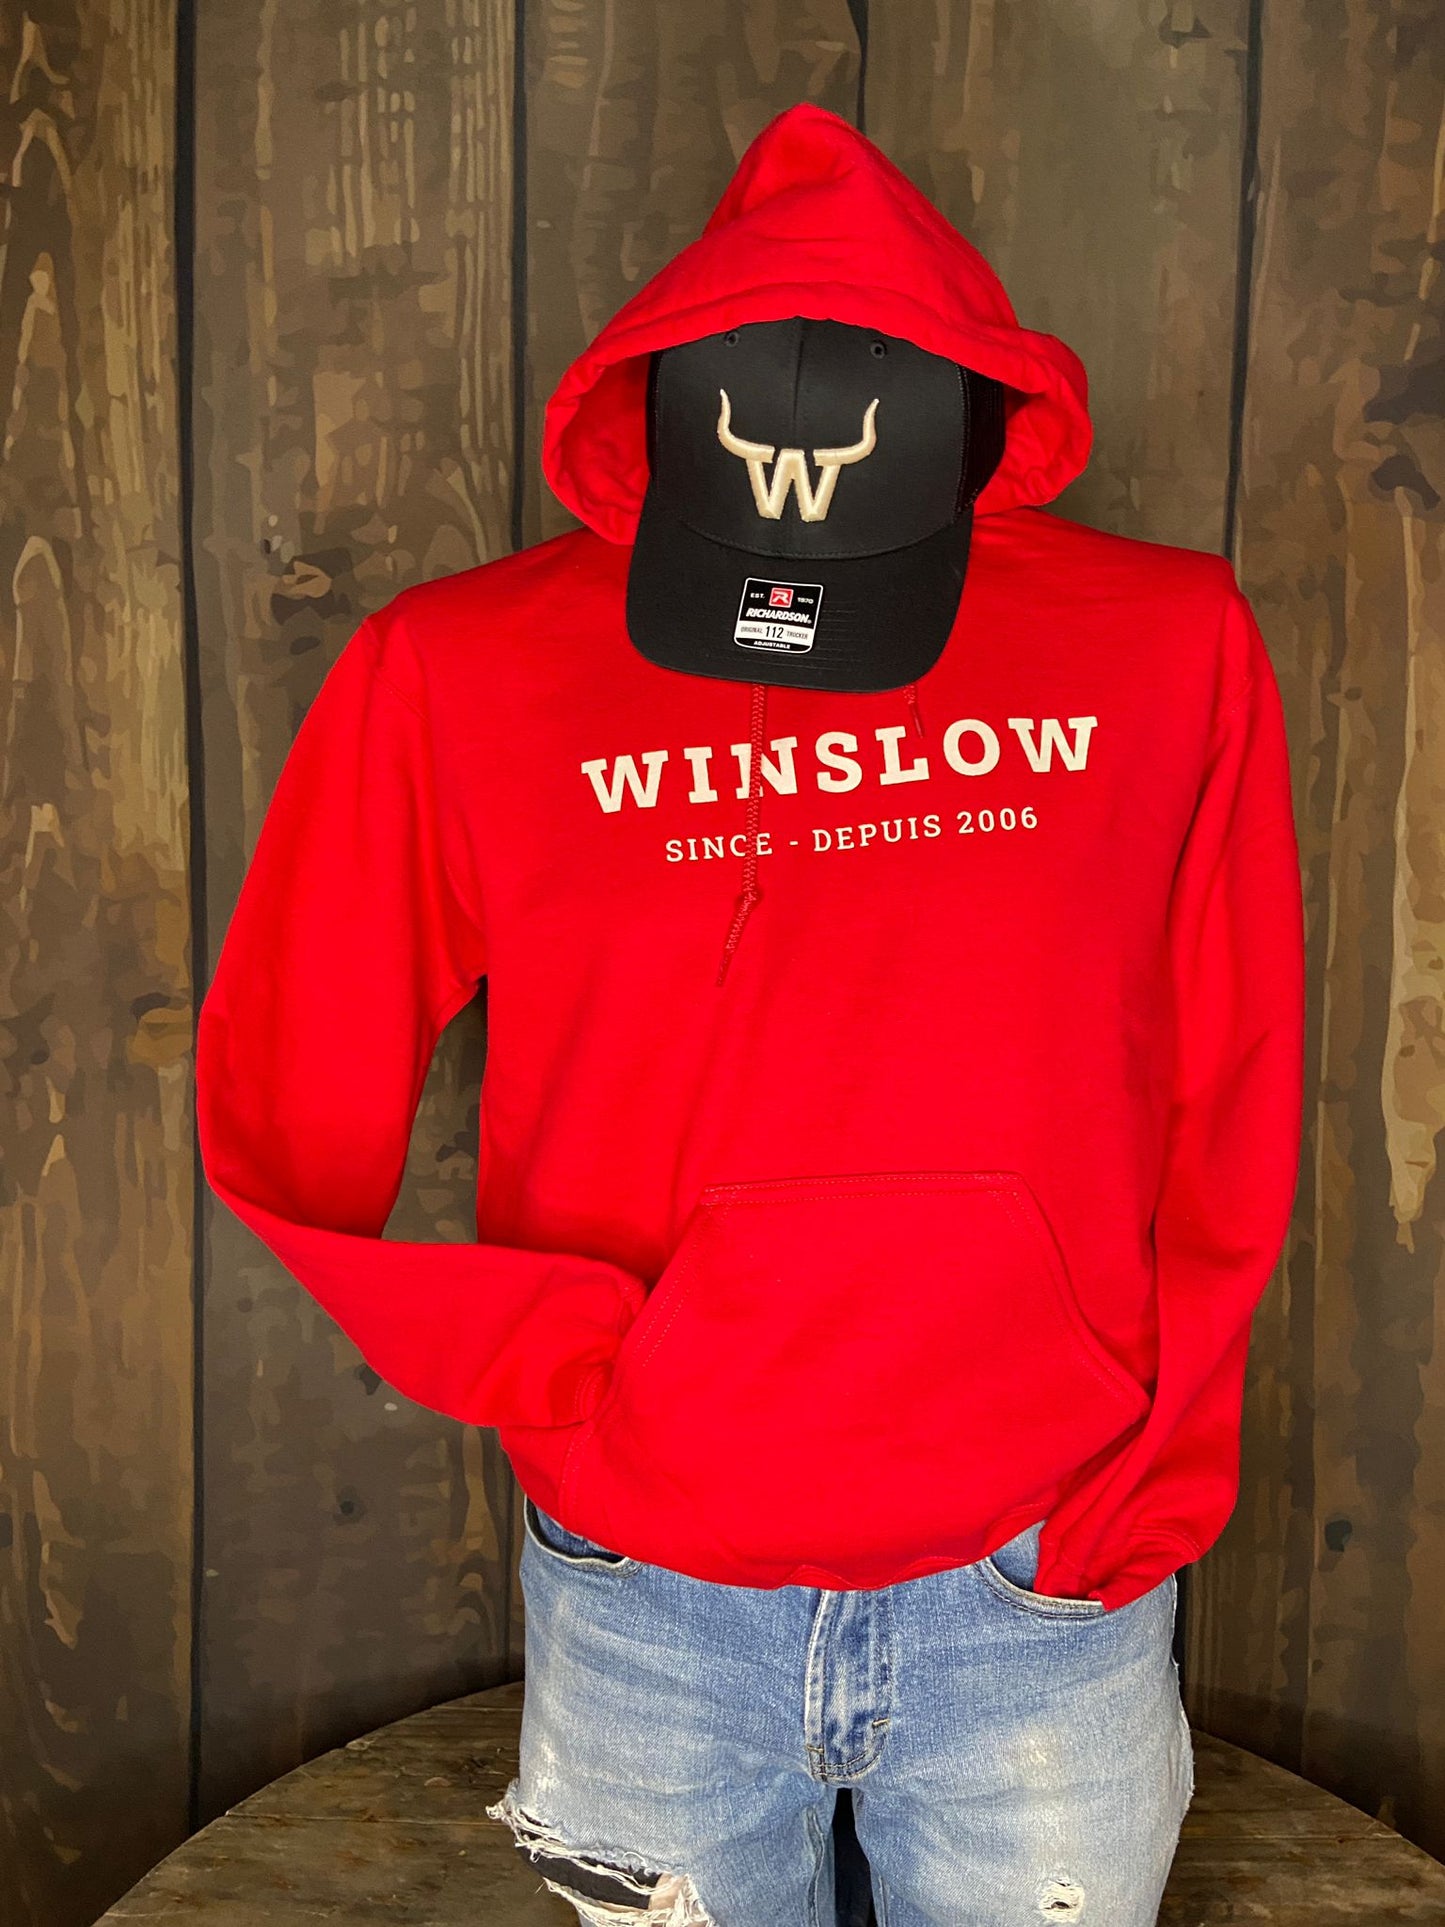 Coton ouaté Winslow since 2006